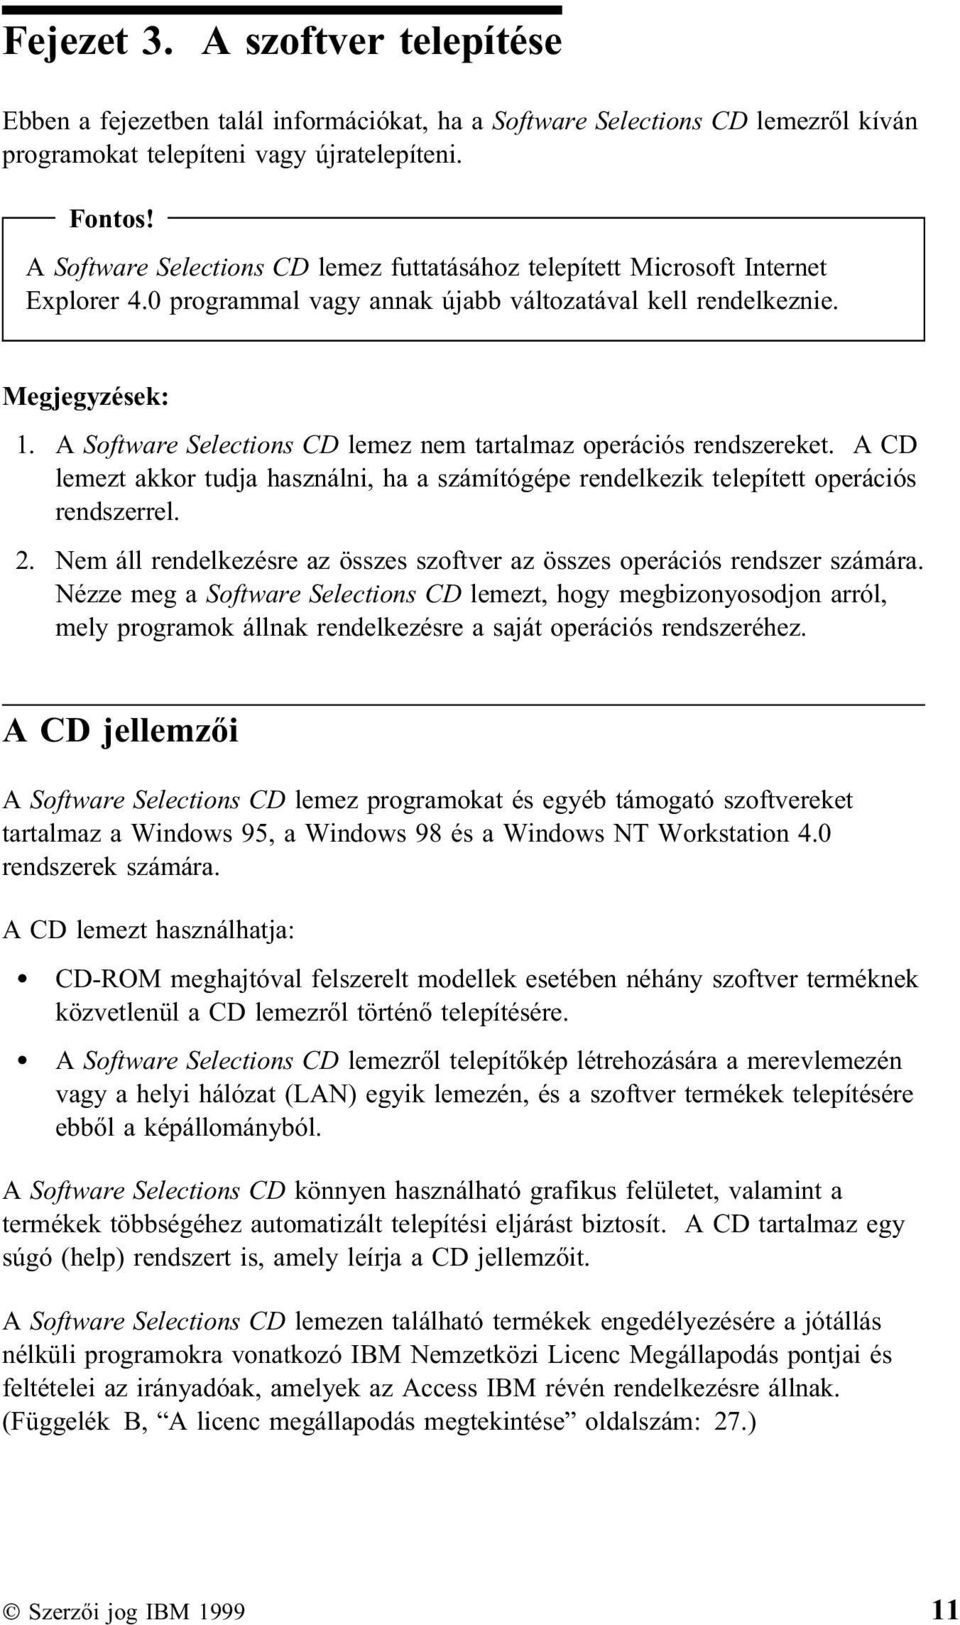 A Software Selections CD lemez nem tartalmaz operációs rendszereket. A CD lemezt akkor tudja használni, ha a számítógépe rendelkezik telepített operációs rendszerrel. 2.